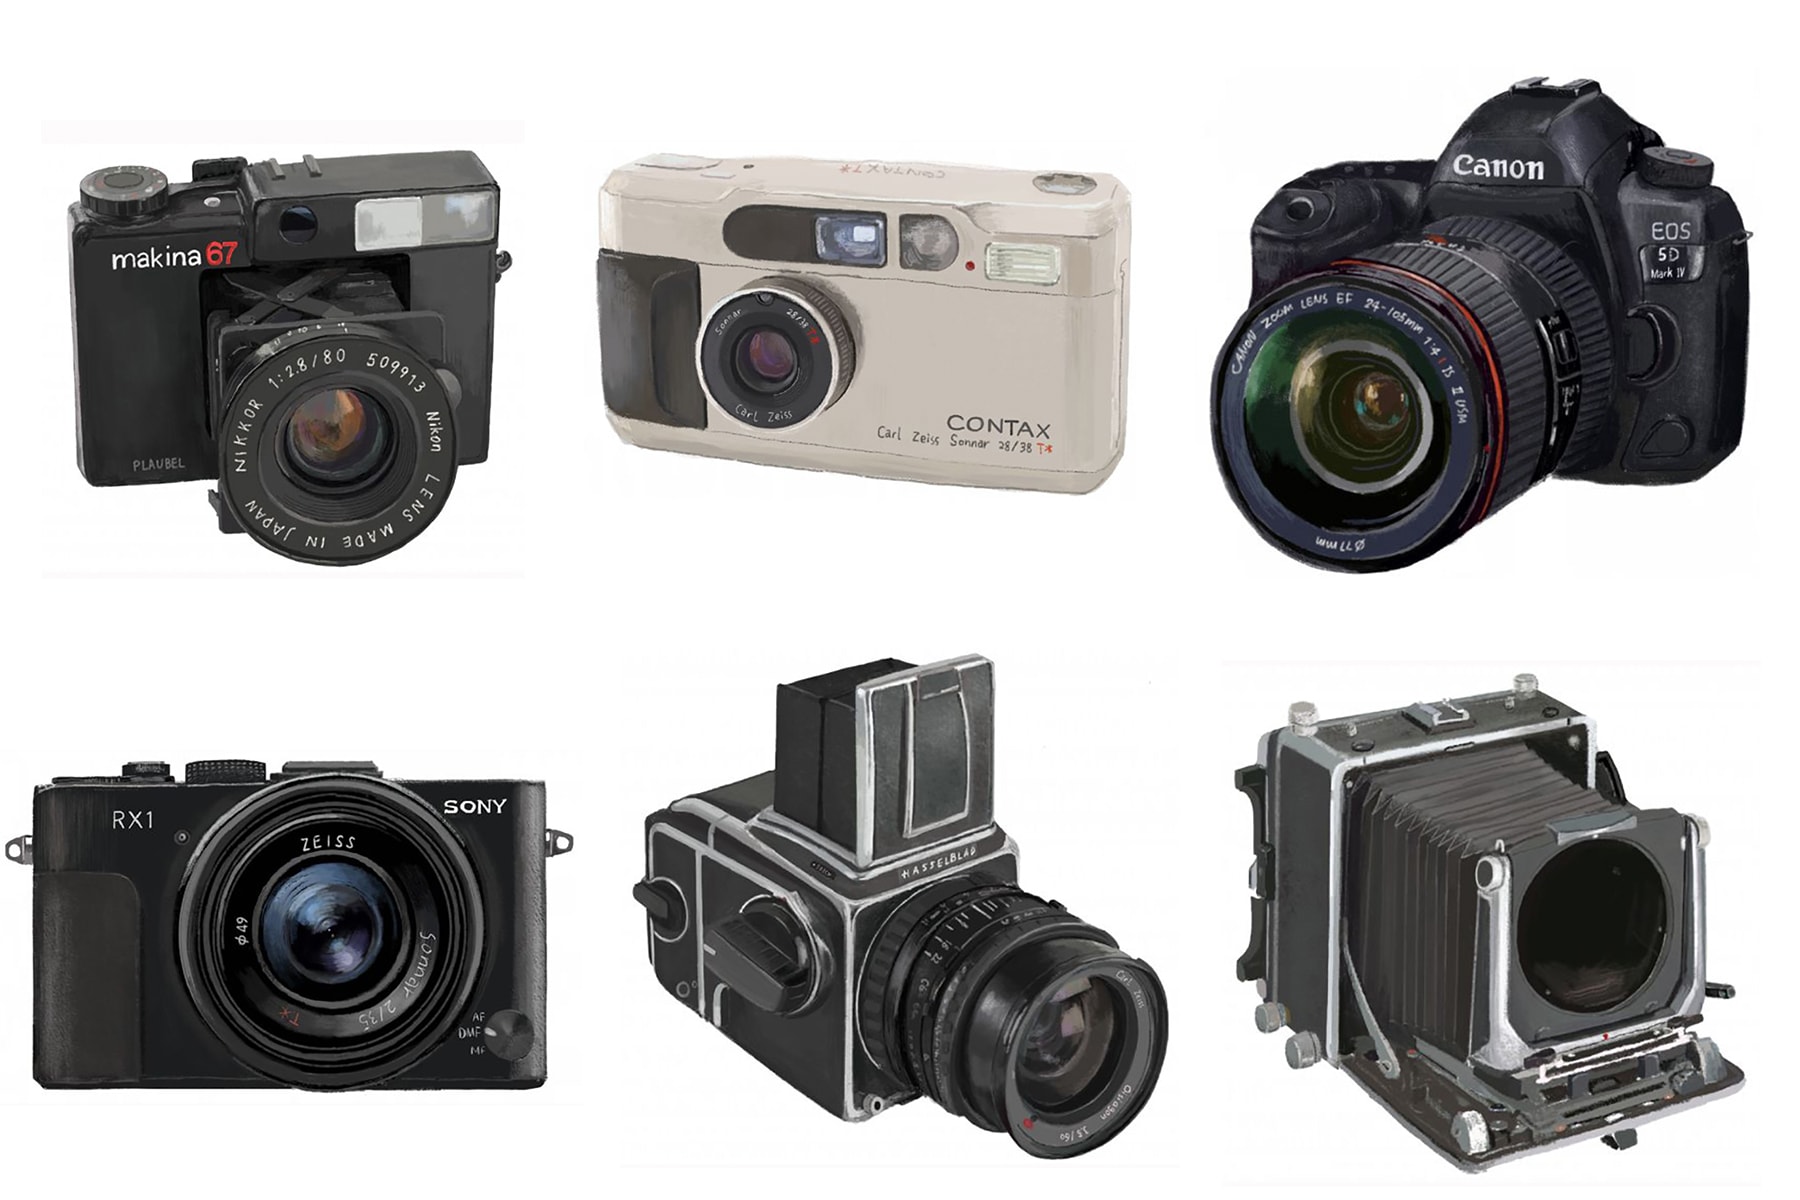 囊括 Nick Knight 助手、BALENCIAGA 攝影師在內的 6 位從業者，都在用什麽相機？